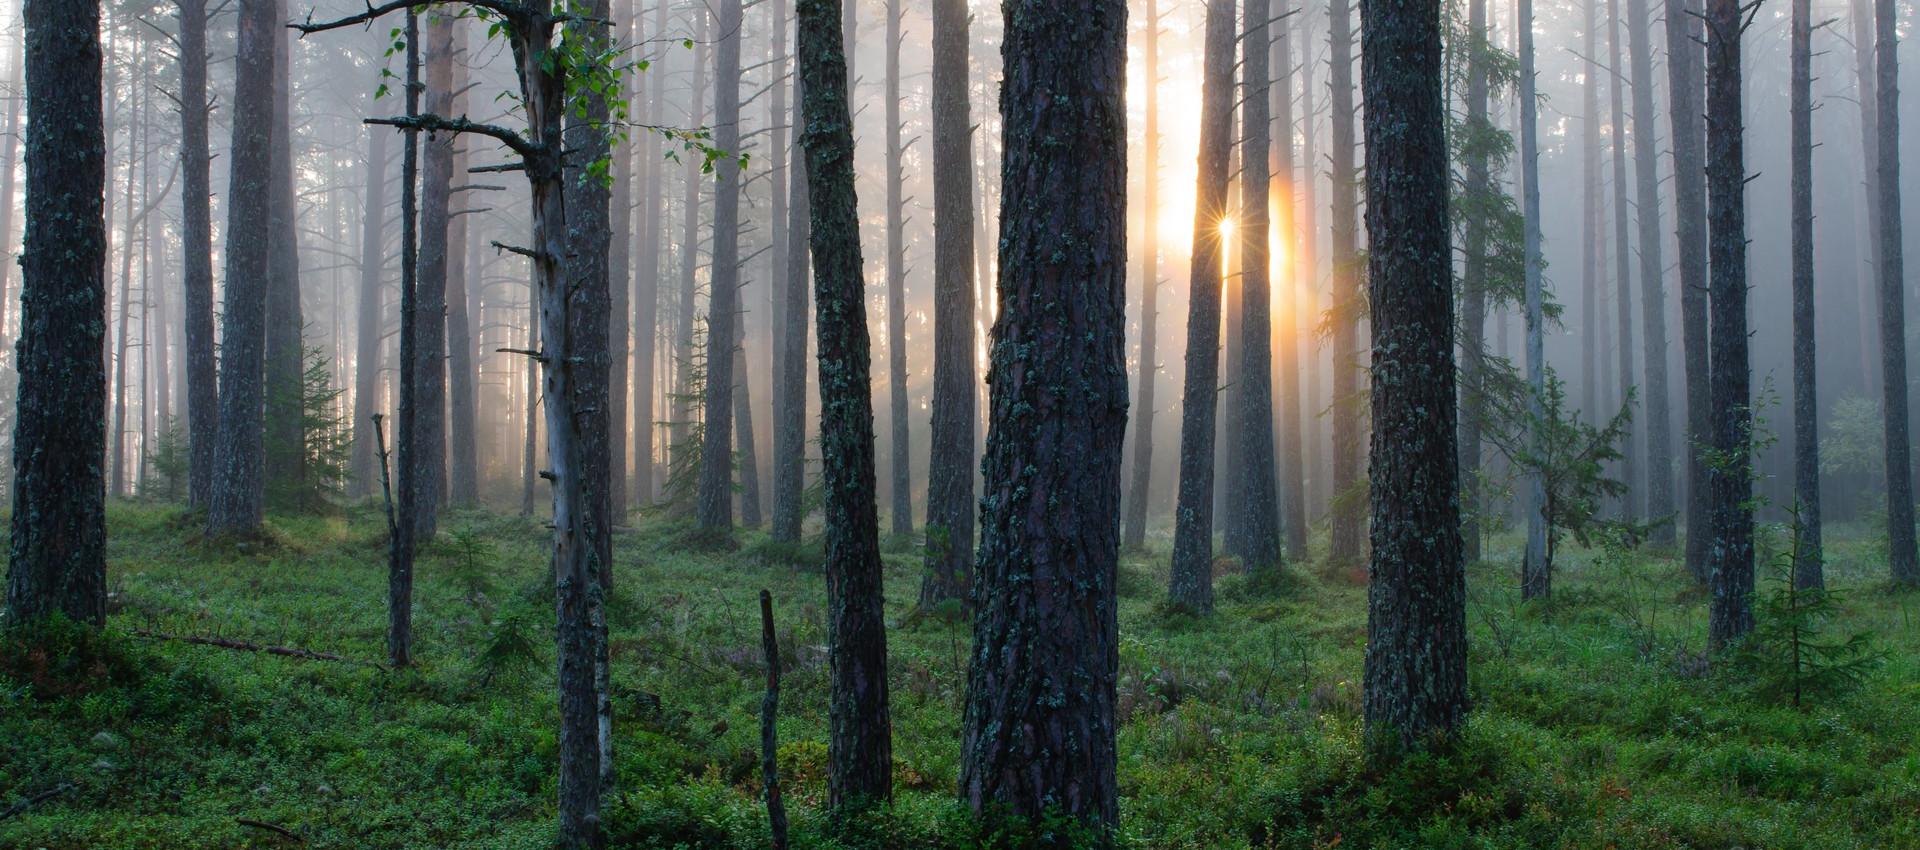 Slováci si kupujú stromy aby ochránili les. Jeden stojí 50€! - ioty.sk 